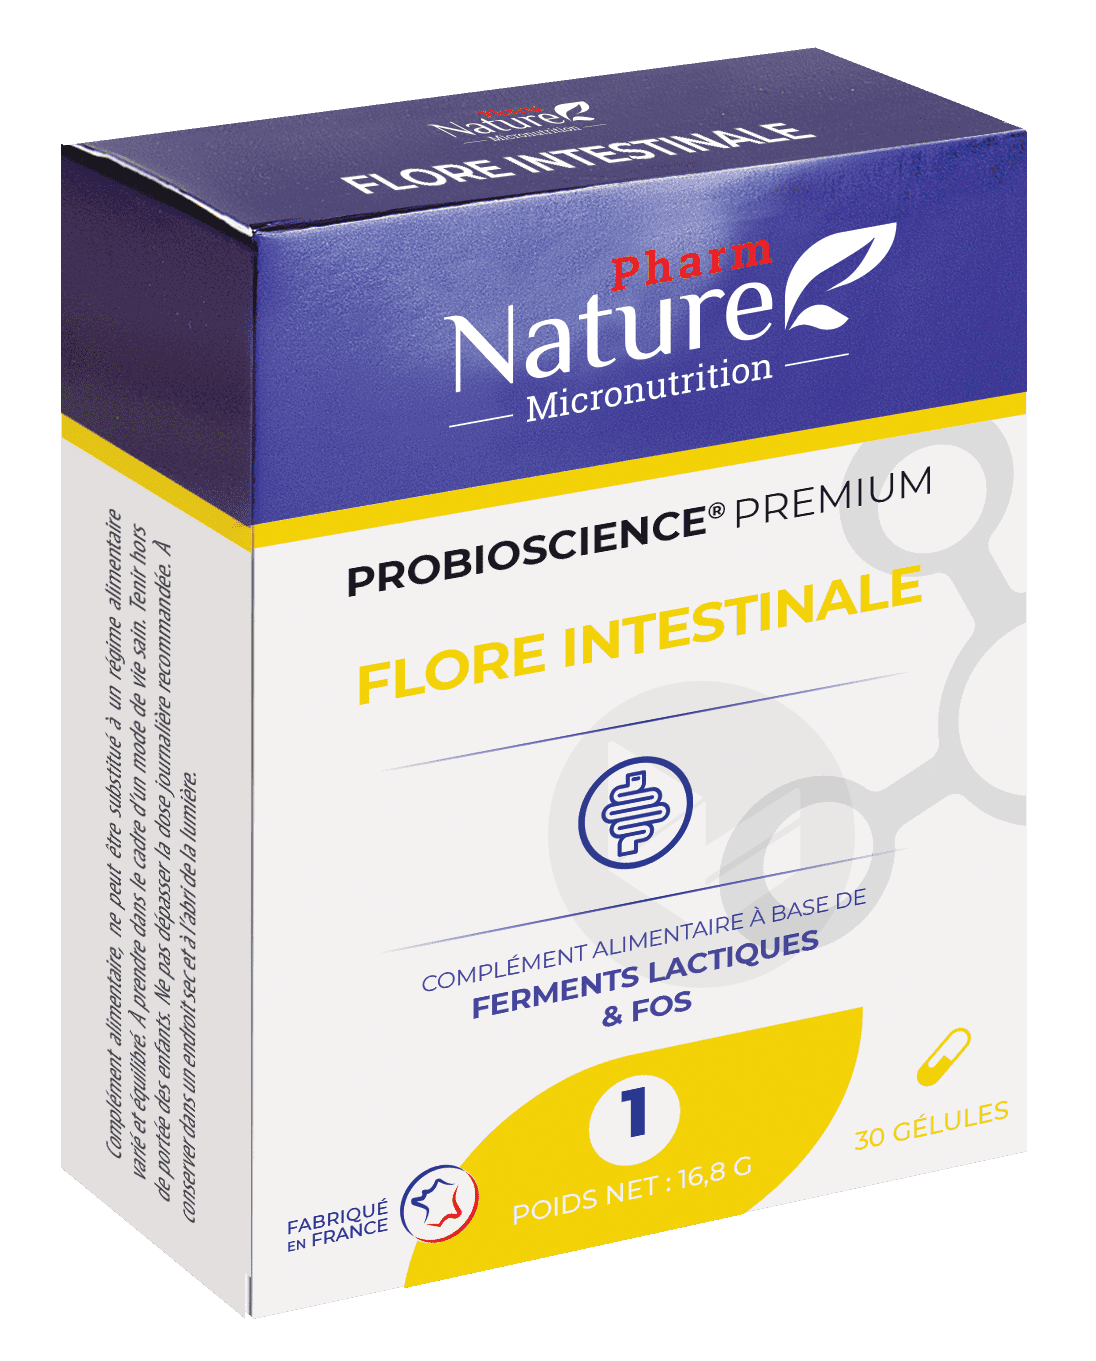 Probioscience® 1 – Flore intestinale 30 gélules